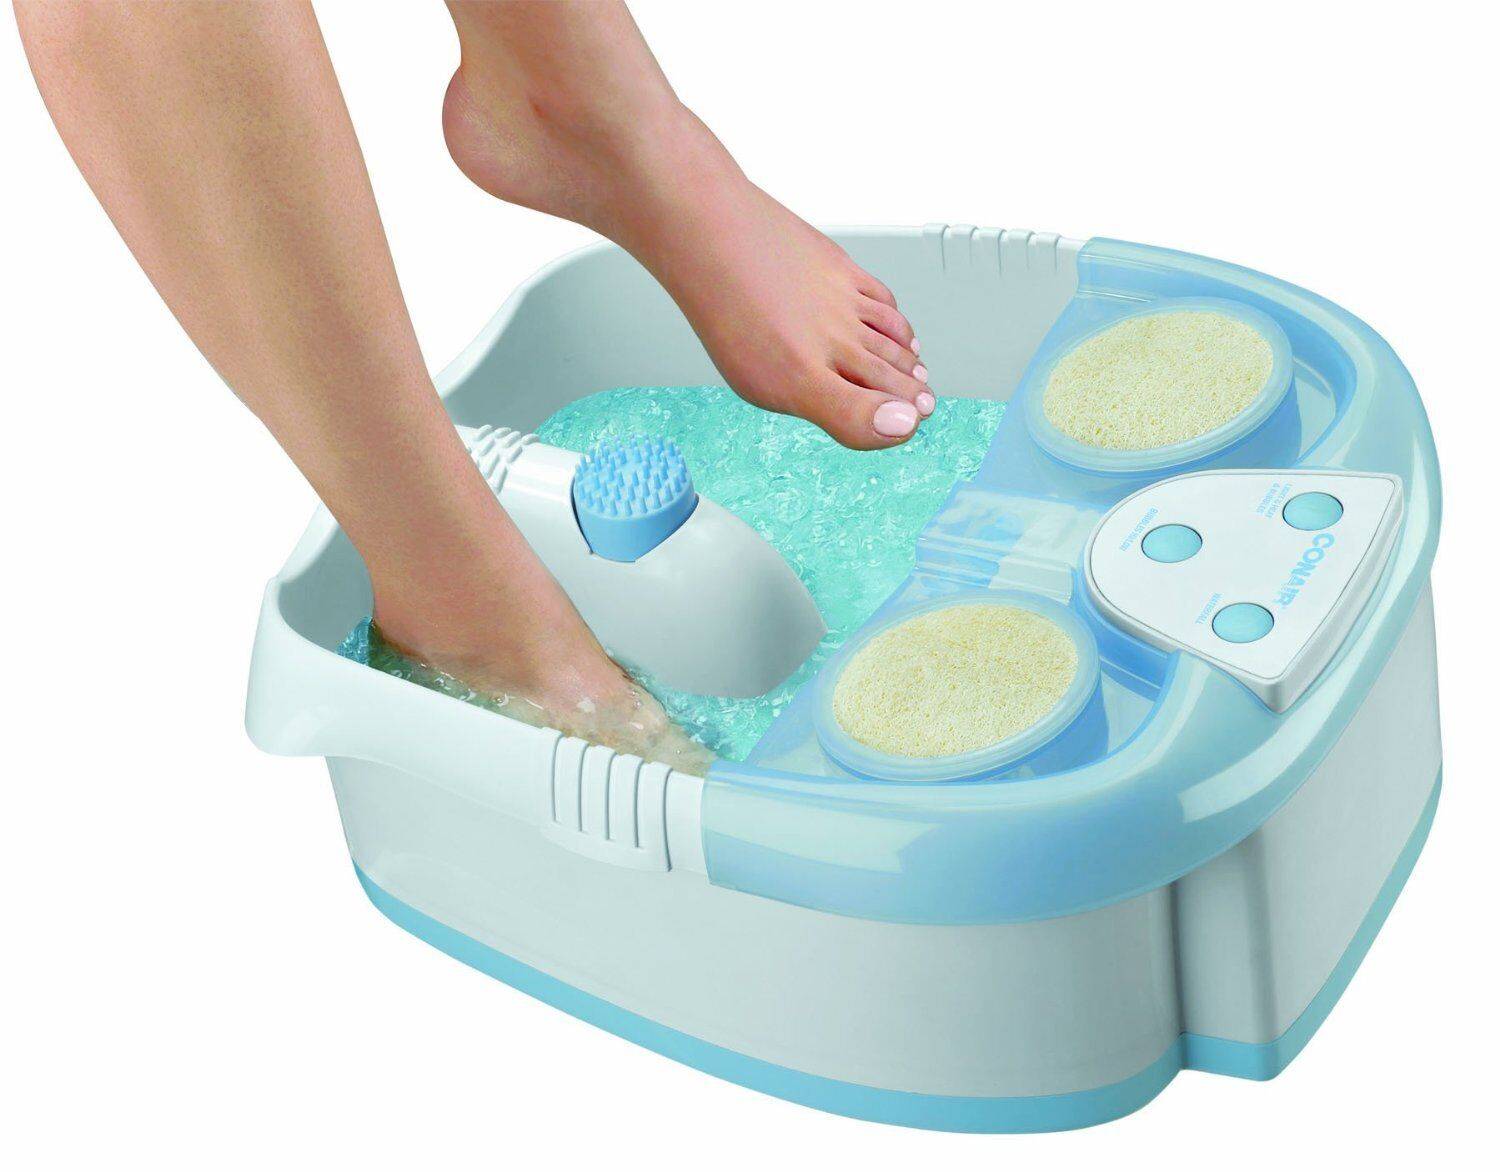 Выбираем лучшую ванночку для ног, рейтинг популярных моделей